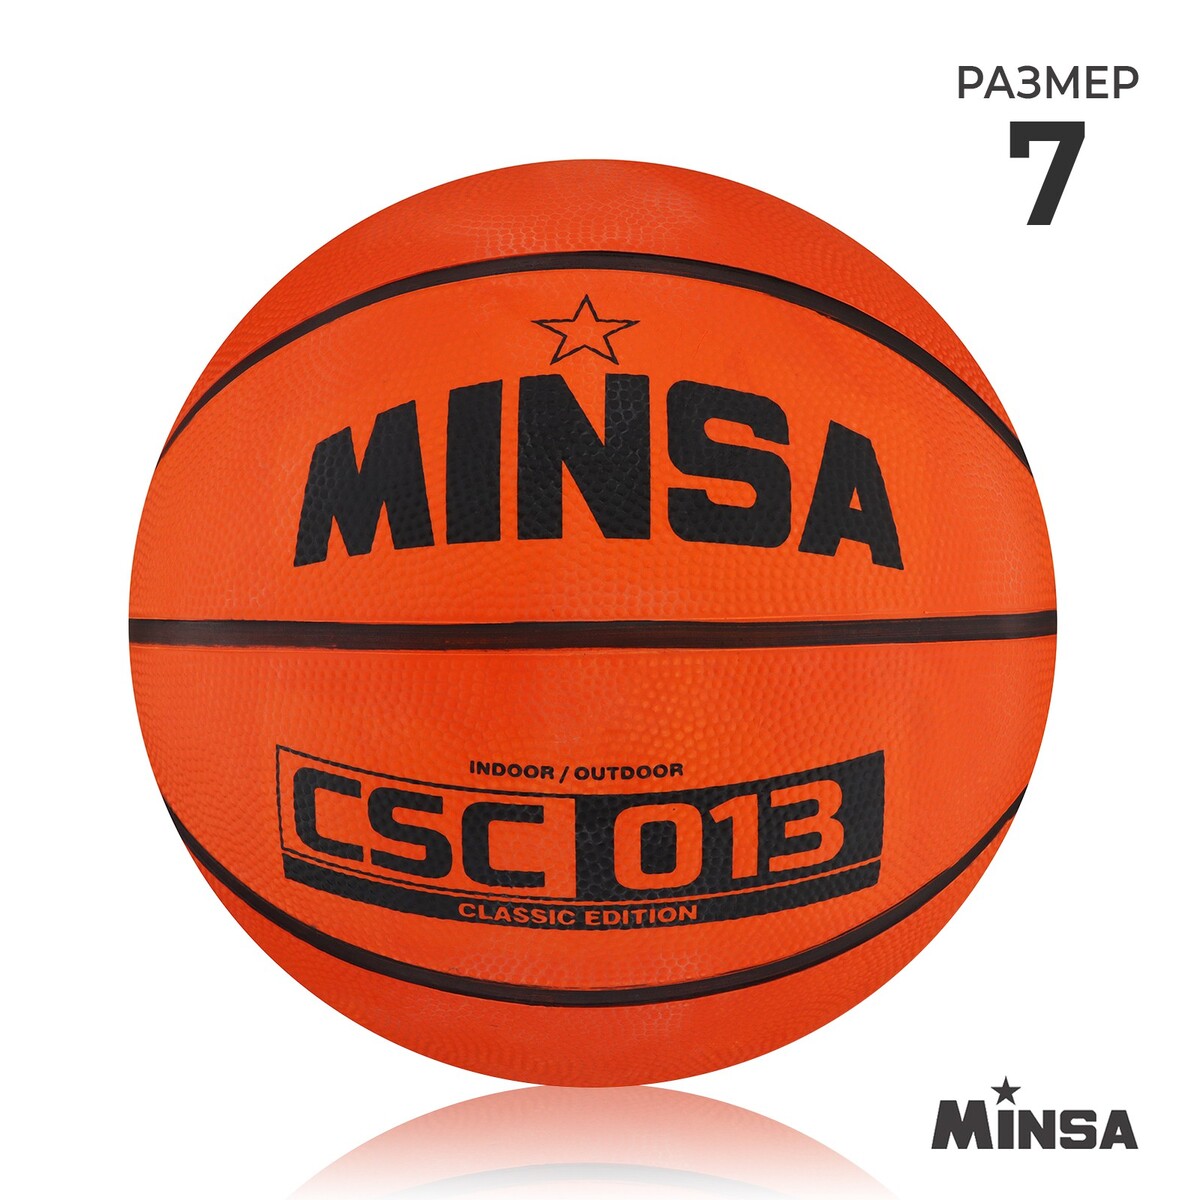 Мяч баскетбольный minsa csc 013, пвх, клееный, 8 панелей, р. 7 мяч баскетбольный любительский molten b5g2000 р 5